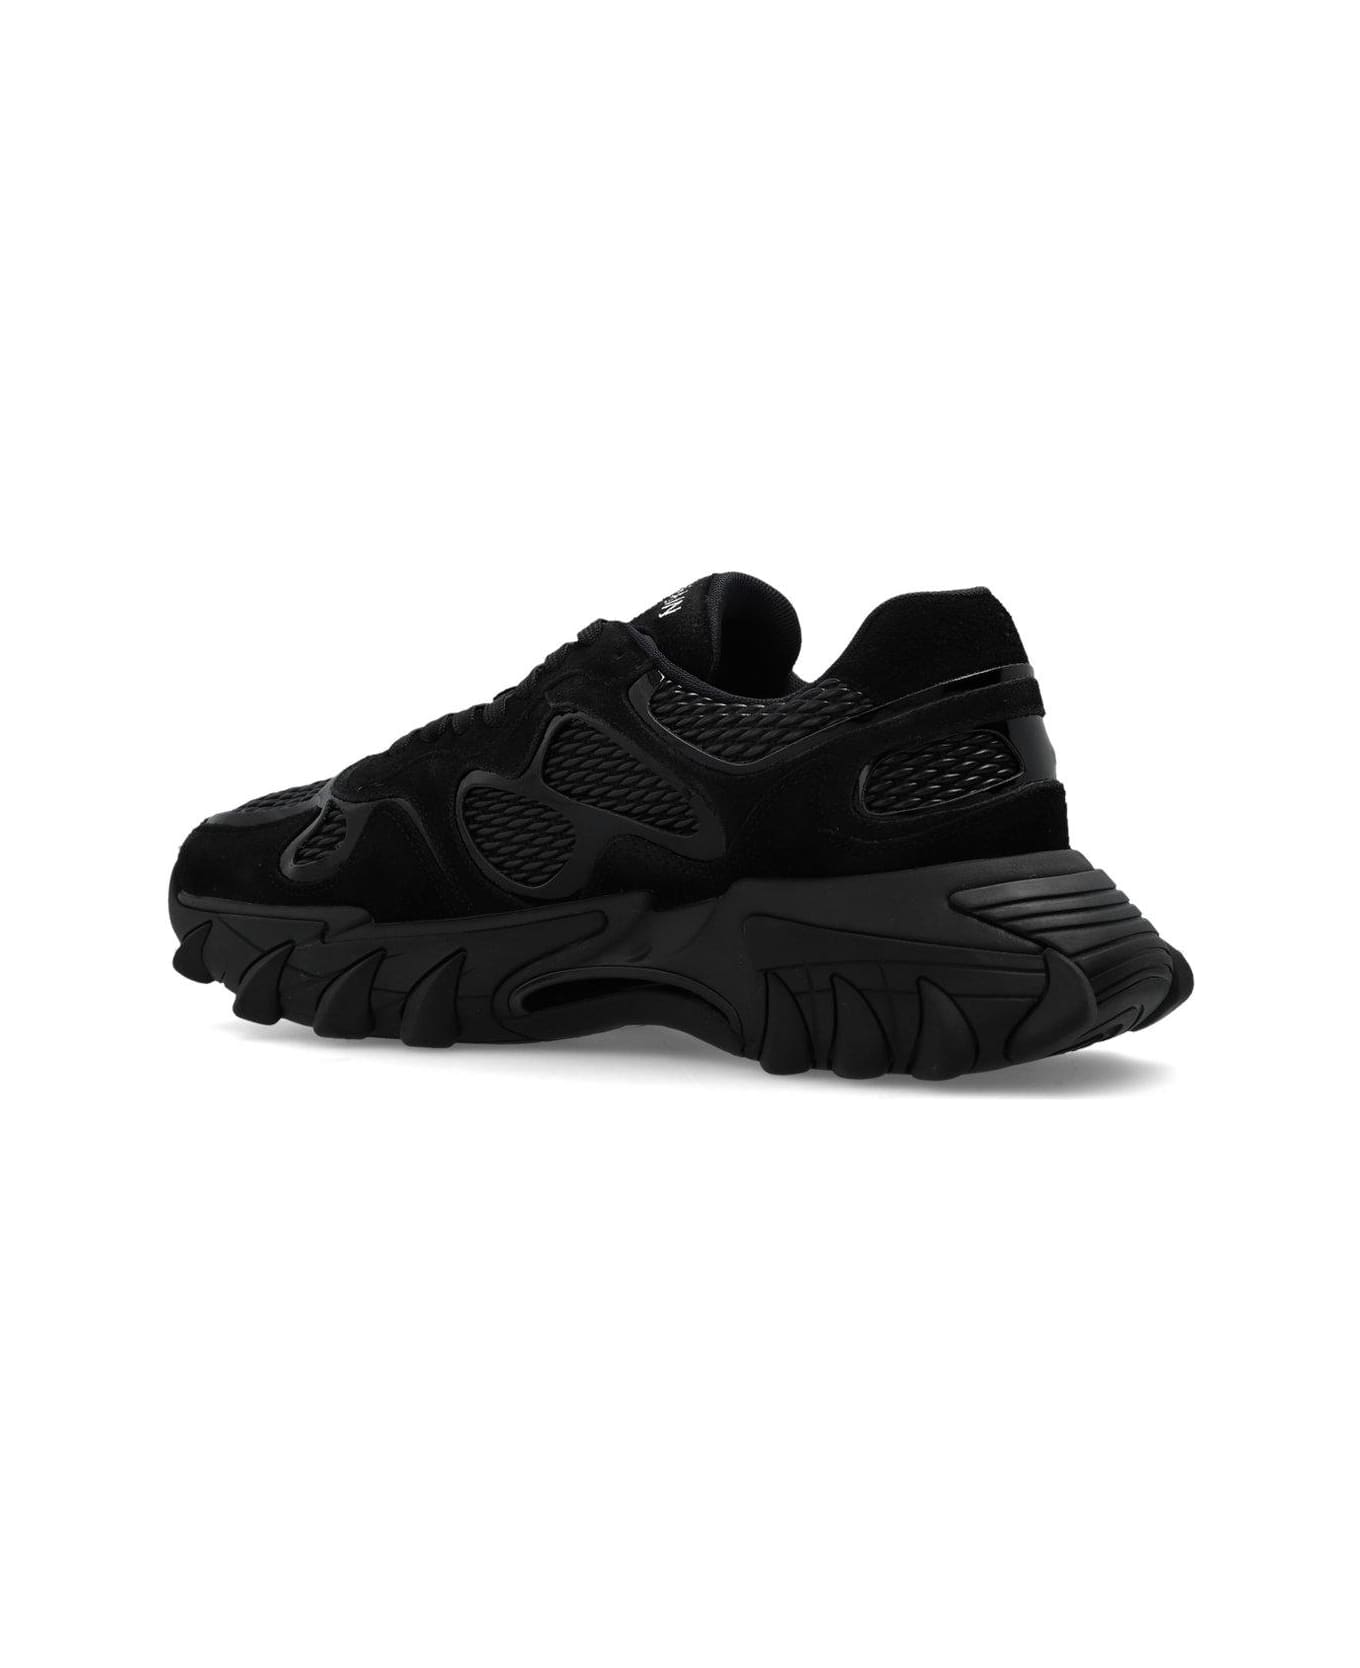 Balmain B East Sneakers - Black